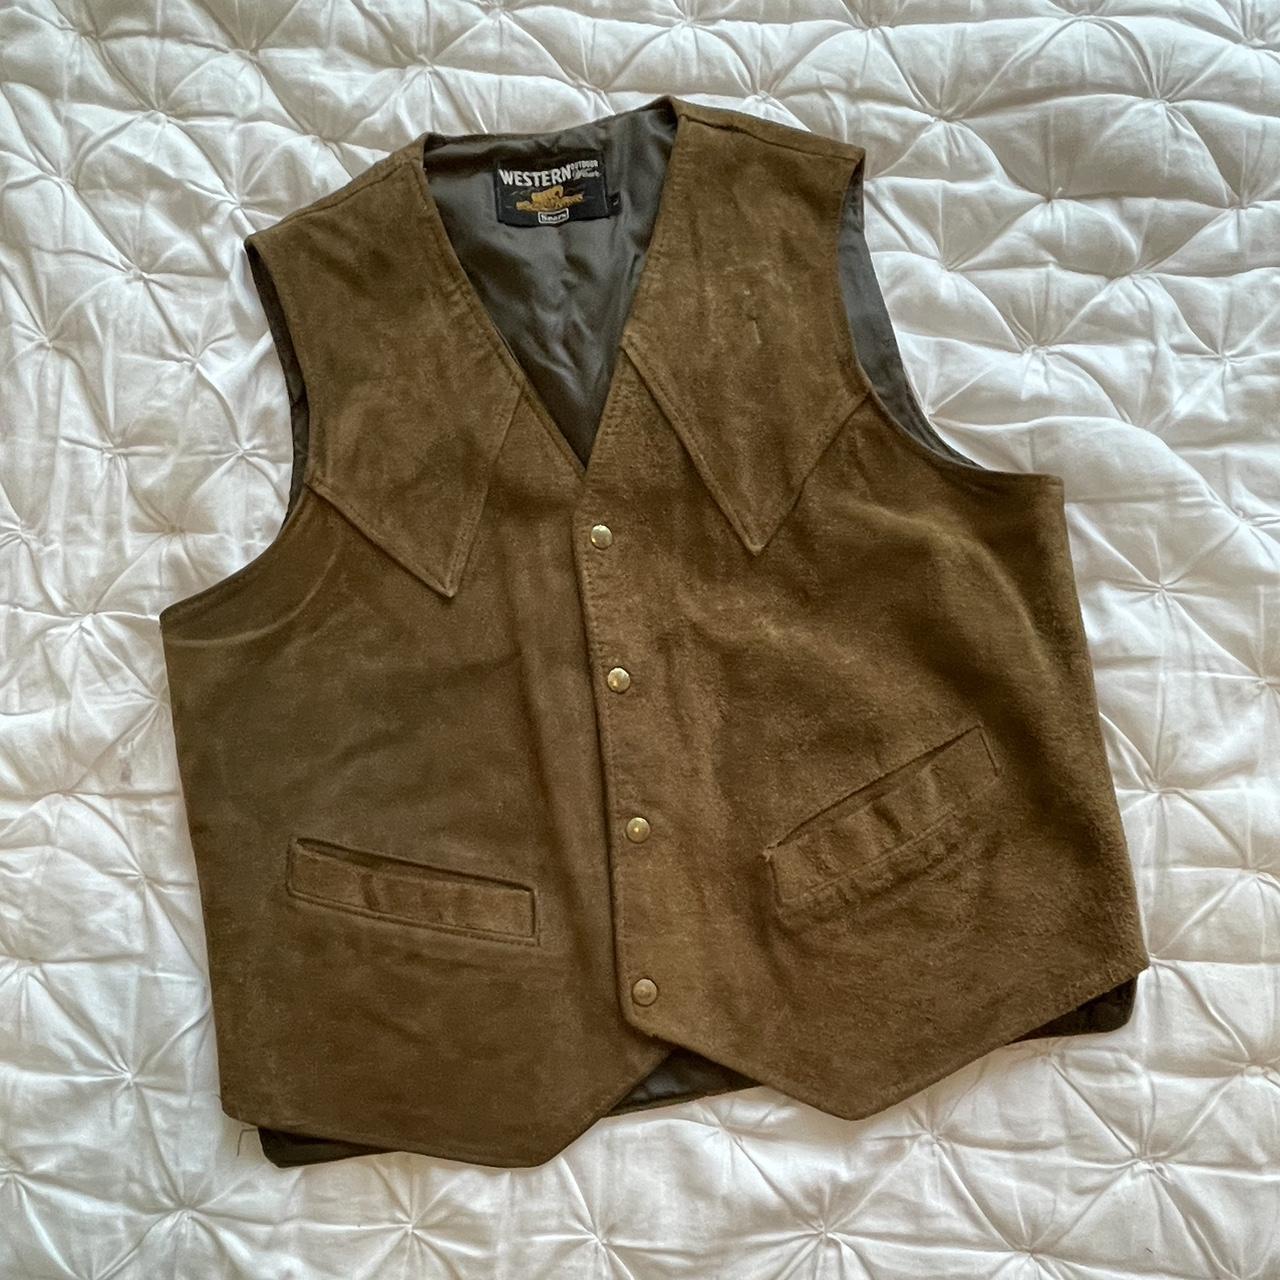 Vintage Sears Western Outdoor Wear Suede Vest this... - Depop